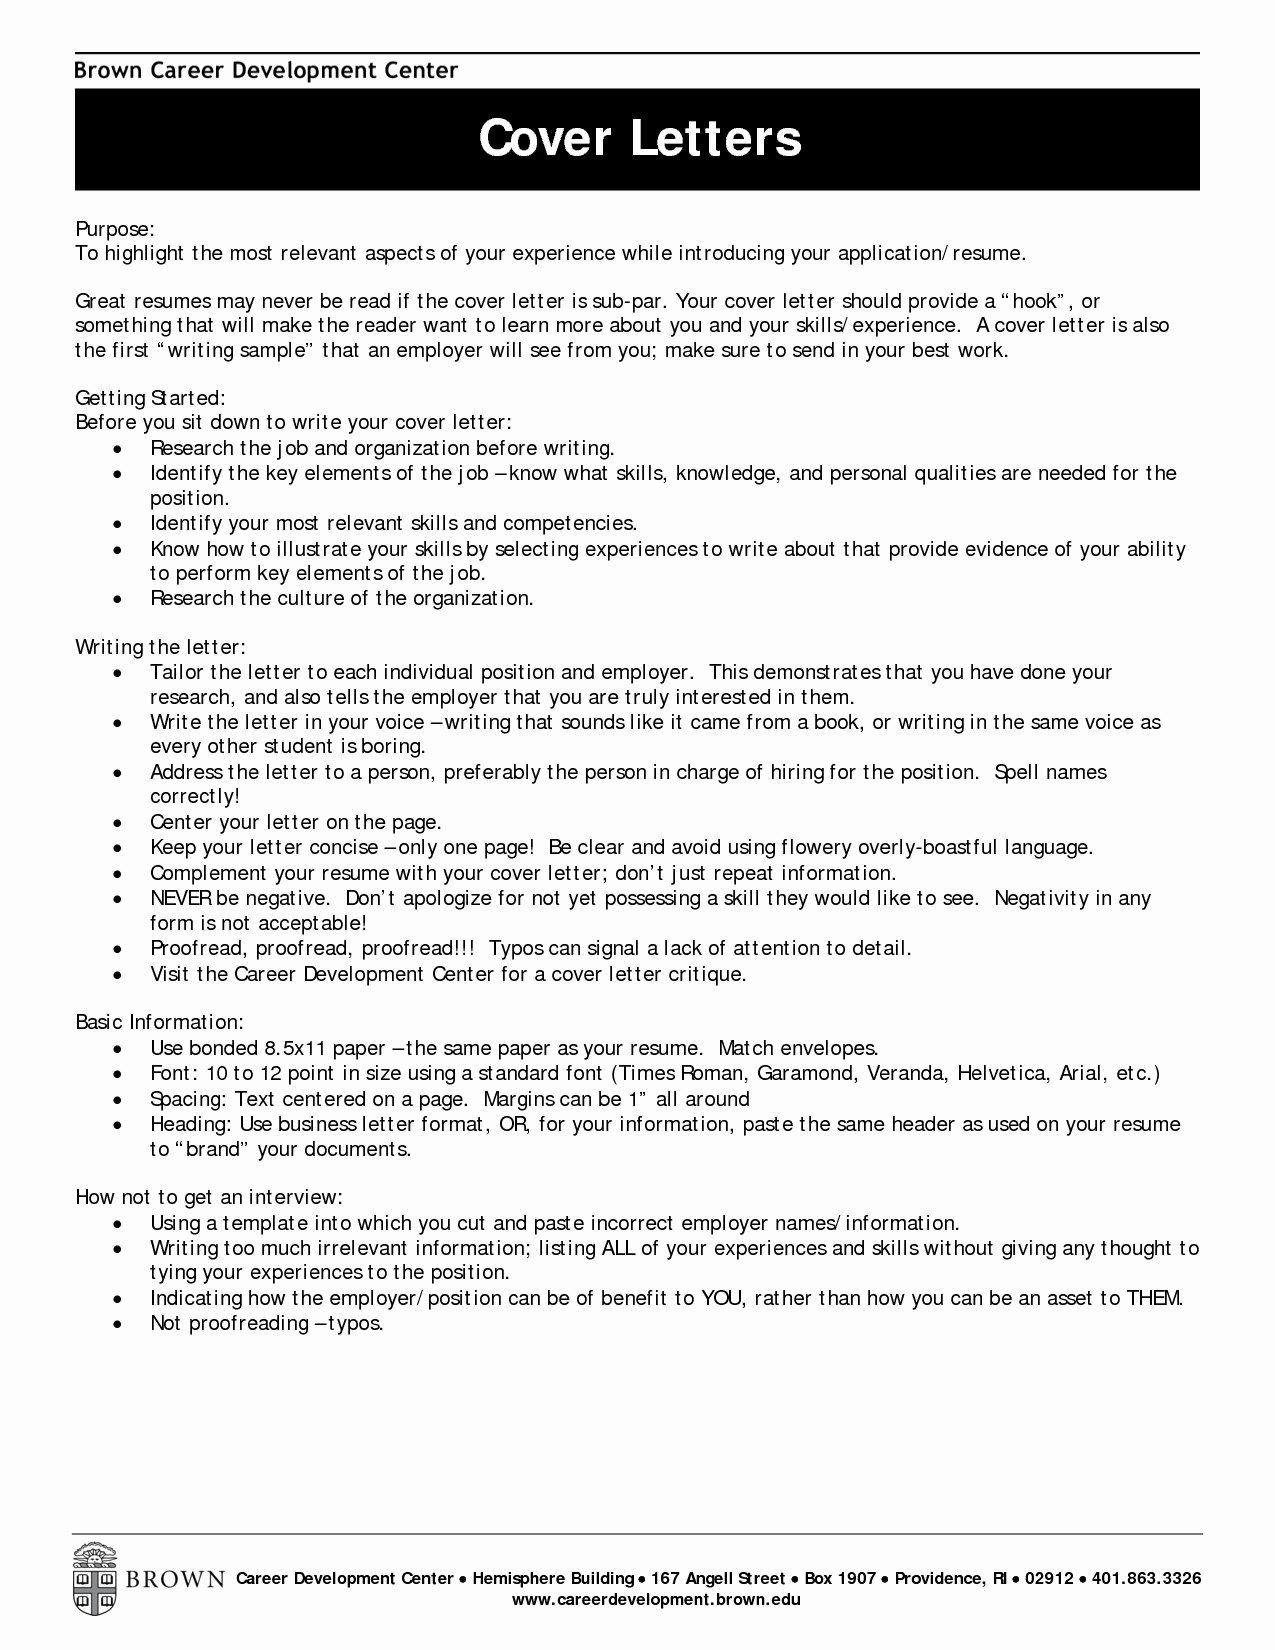 Career Change Resume Cover Letter